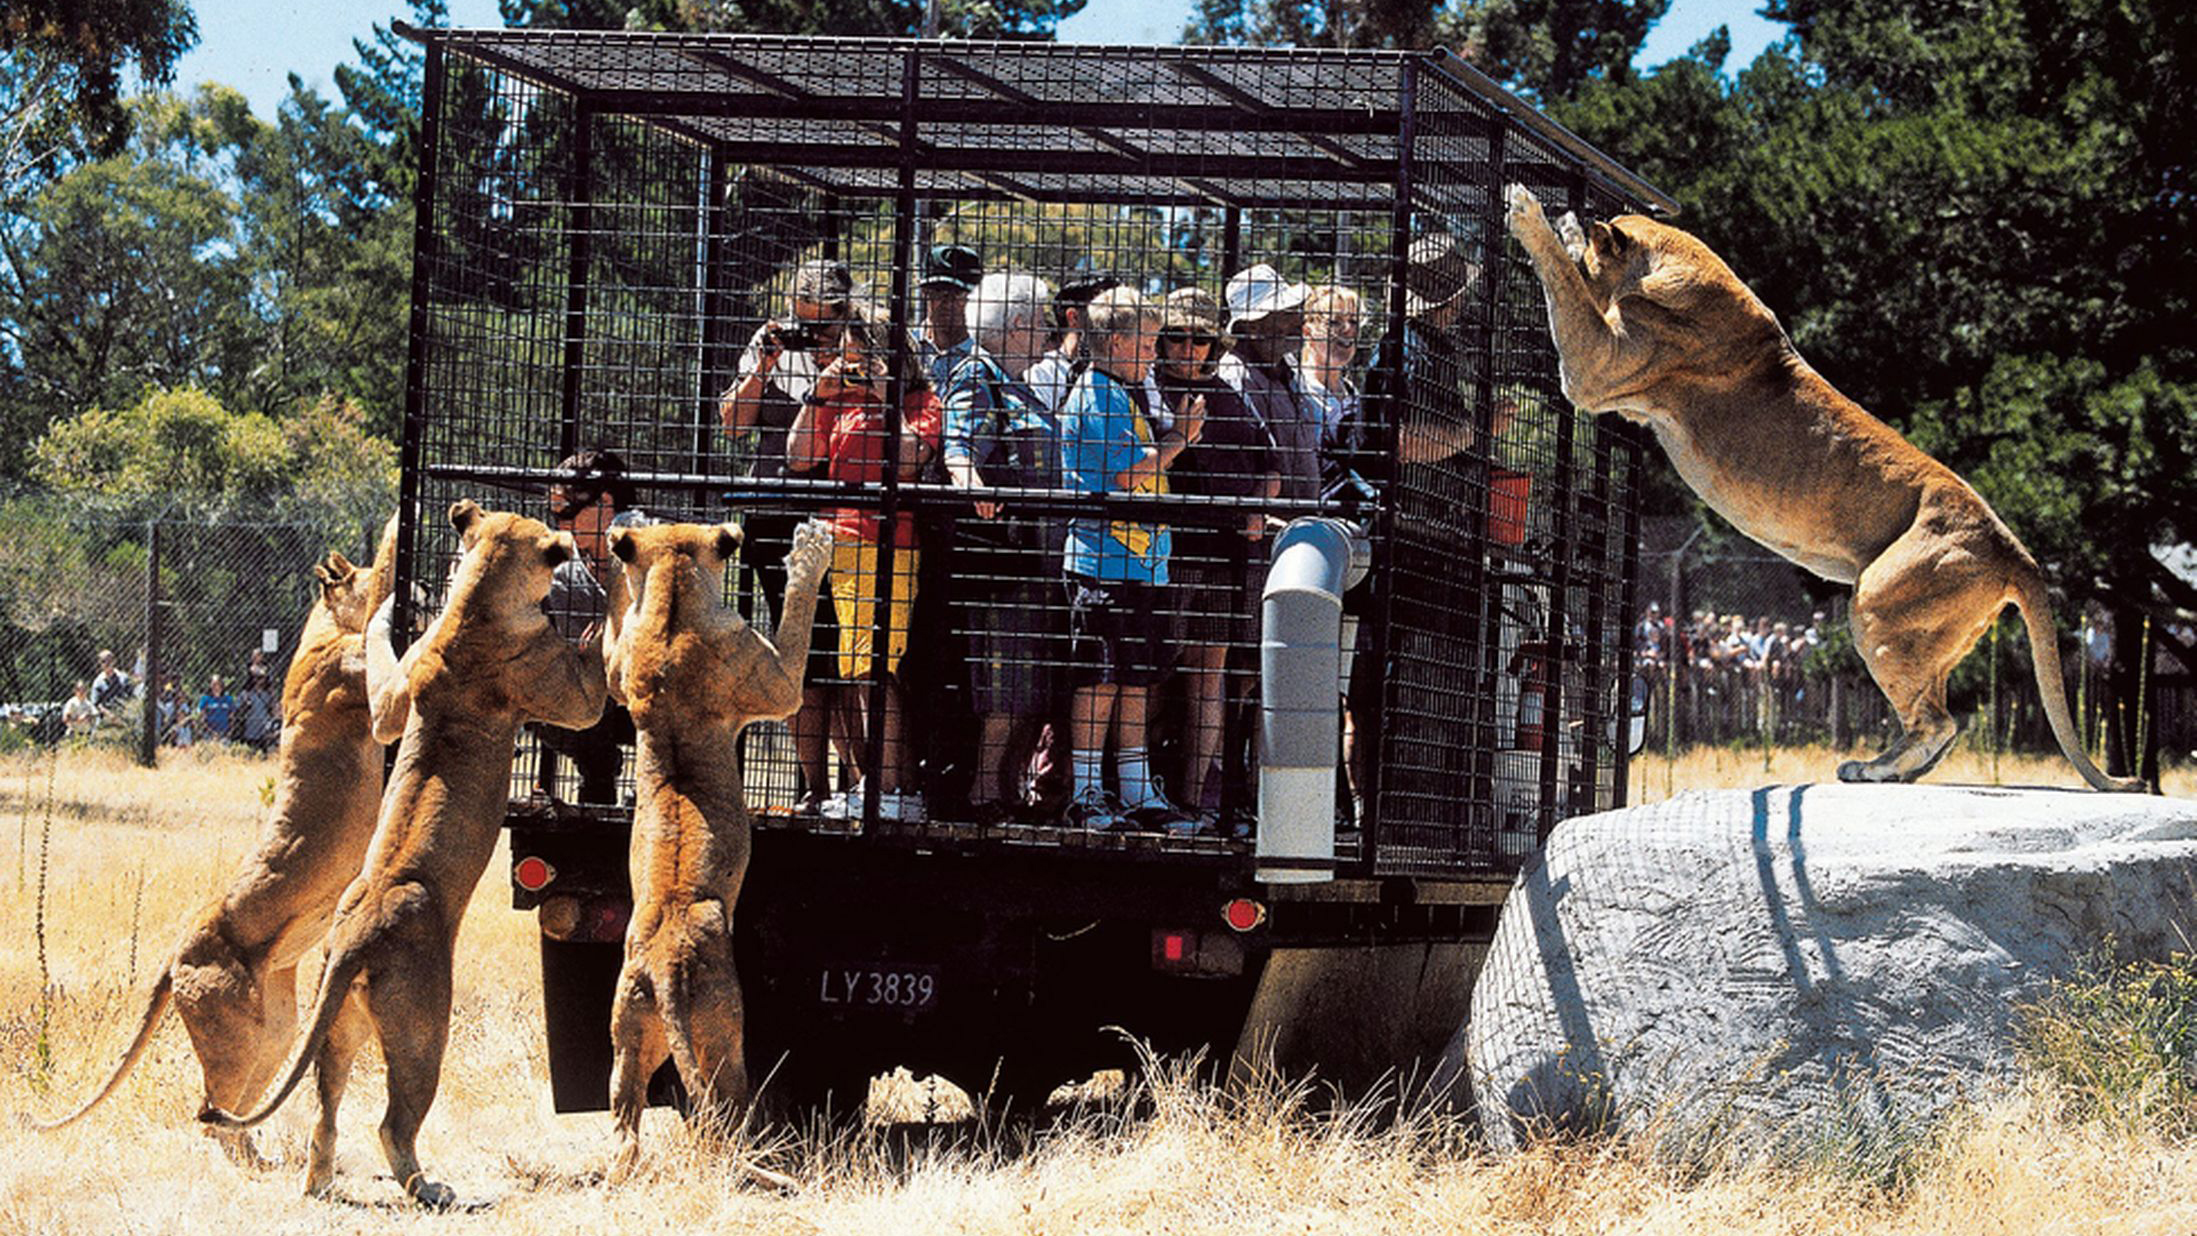 Животные и развлечения. Зоопарк Орана в новой Зеландии. Сафари-парк зоопарка Сан-Диего. Сан Диего сафари парк. Парк дикой природы «Орана» в Крайстчерче в новой Зеландии.